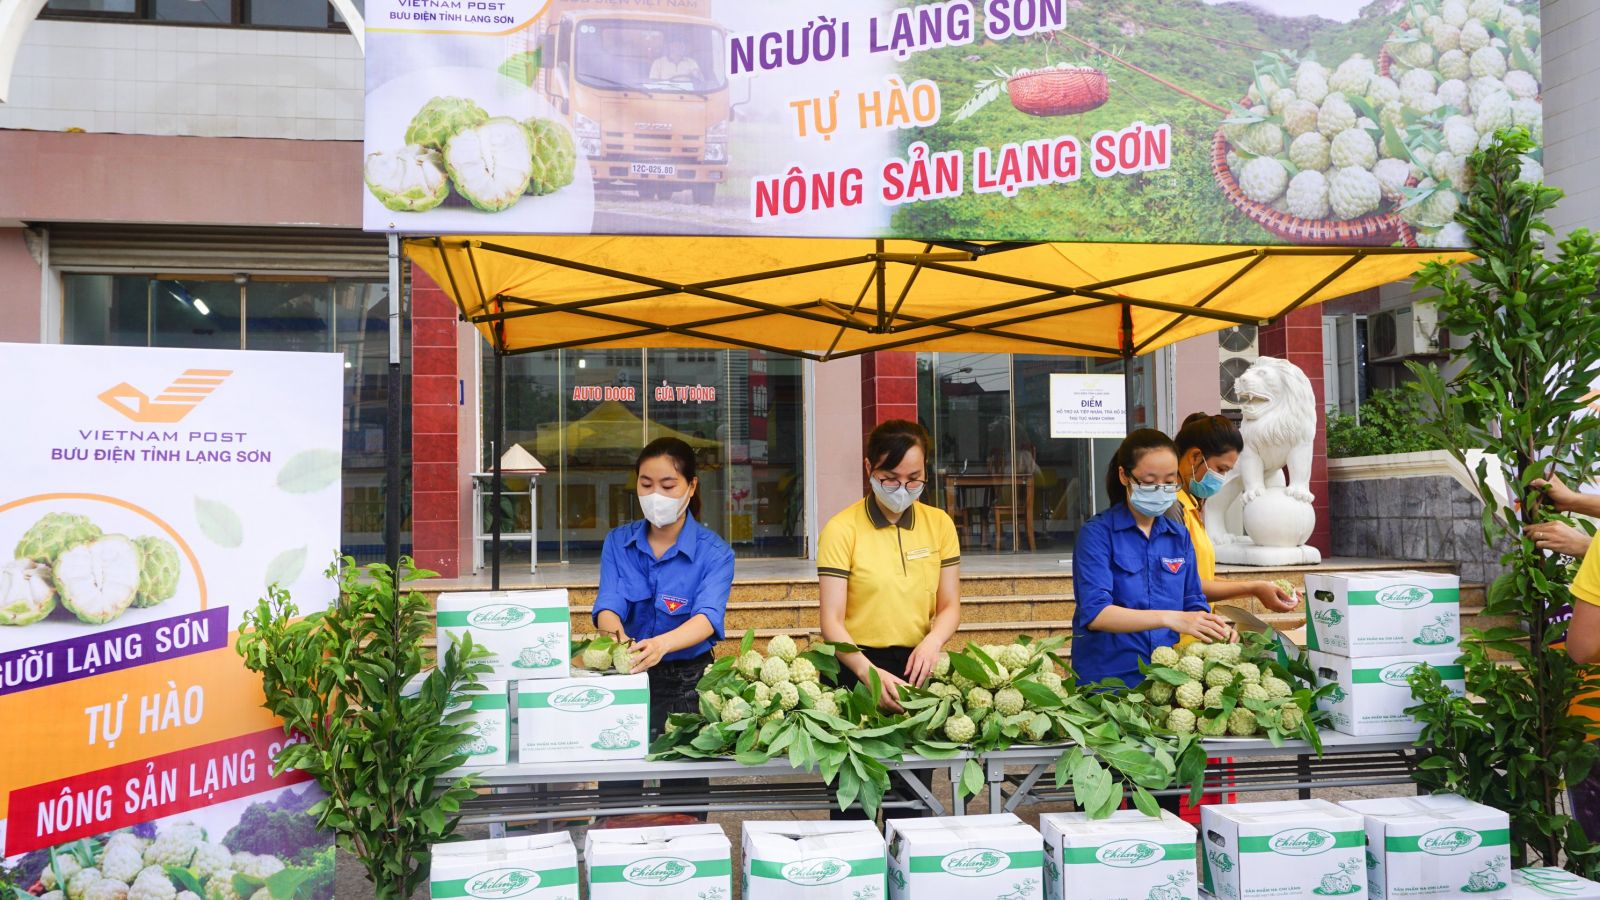 Vietnam Post sẽ áp dụng gói đồng giá cước vận chuyển na Lạng Sơn với mức 20.000 đồng/đơn đến 5kg, 30.000 đồng/đơn đến 10kg cho khách hàng đặt mua sản phẩm na Lạng Sơn trên sàn TMĐT Postmart.vn              